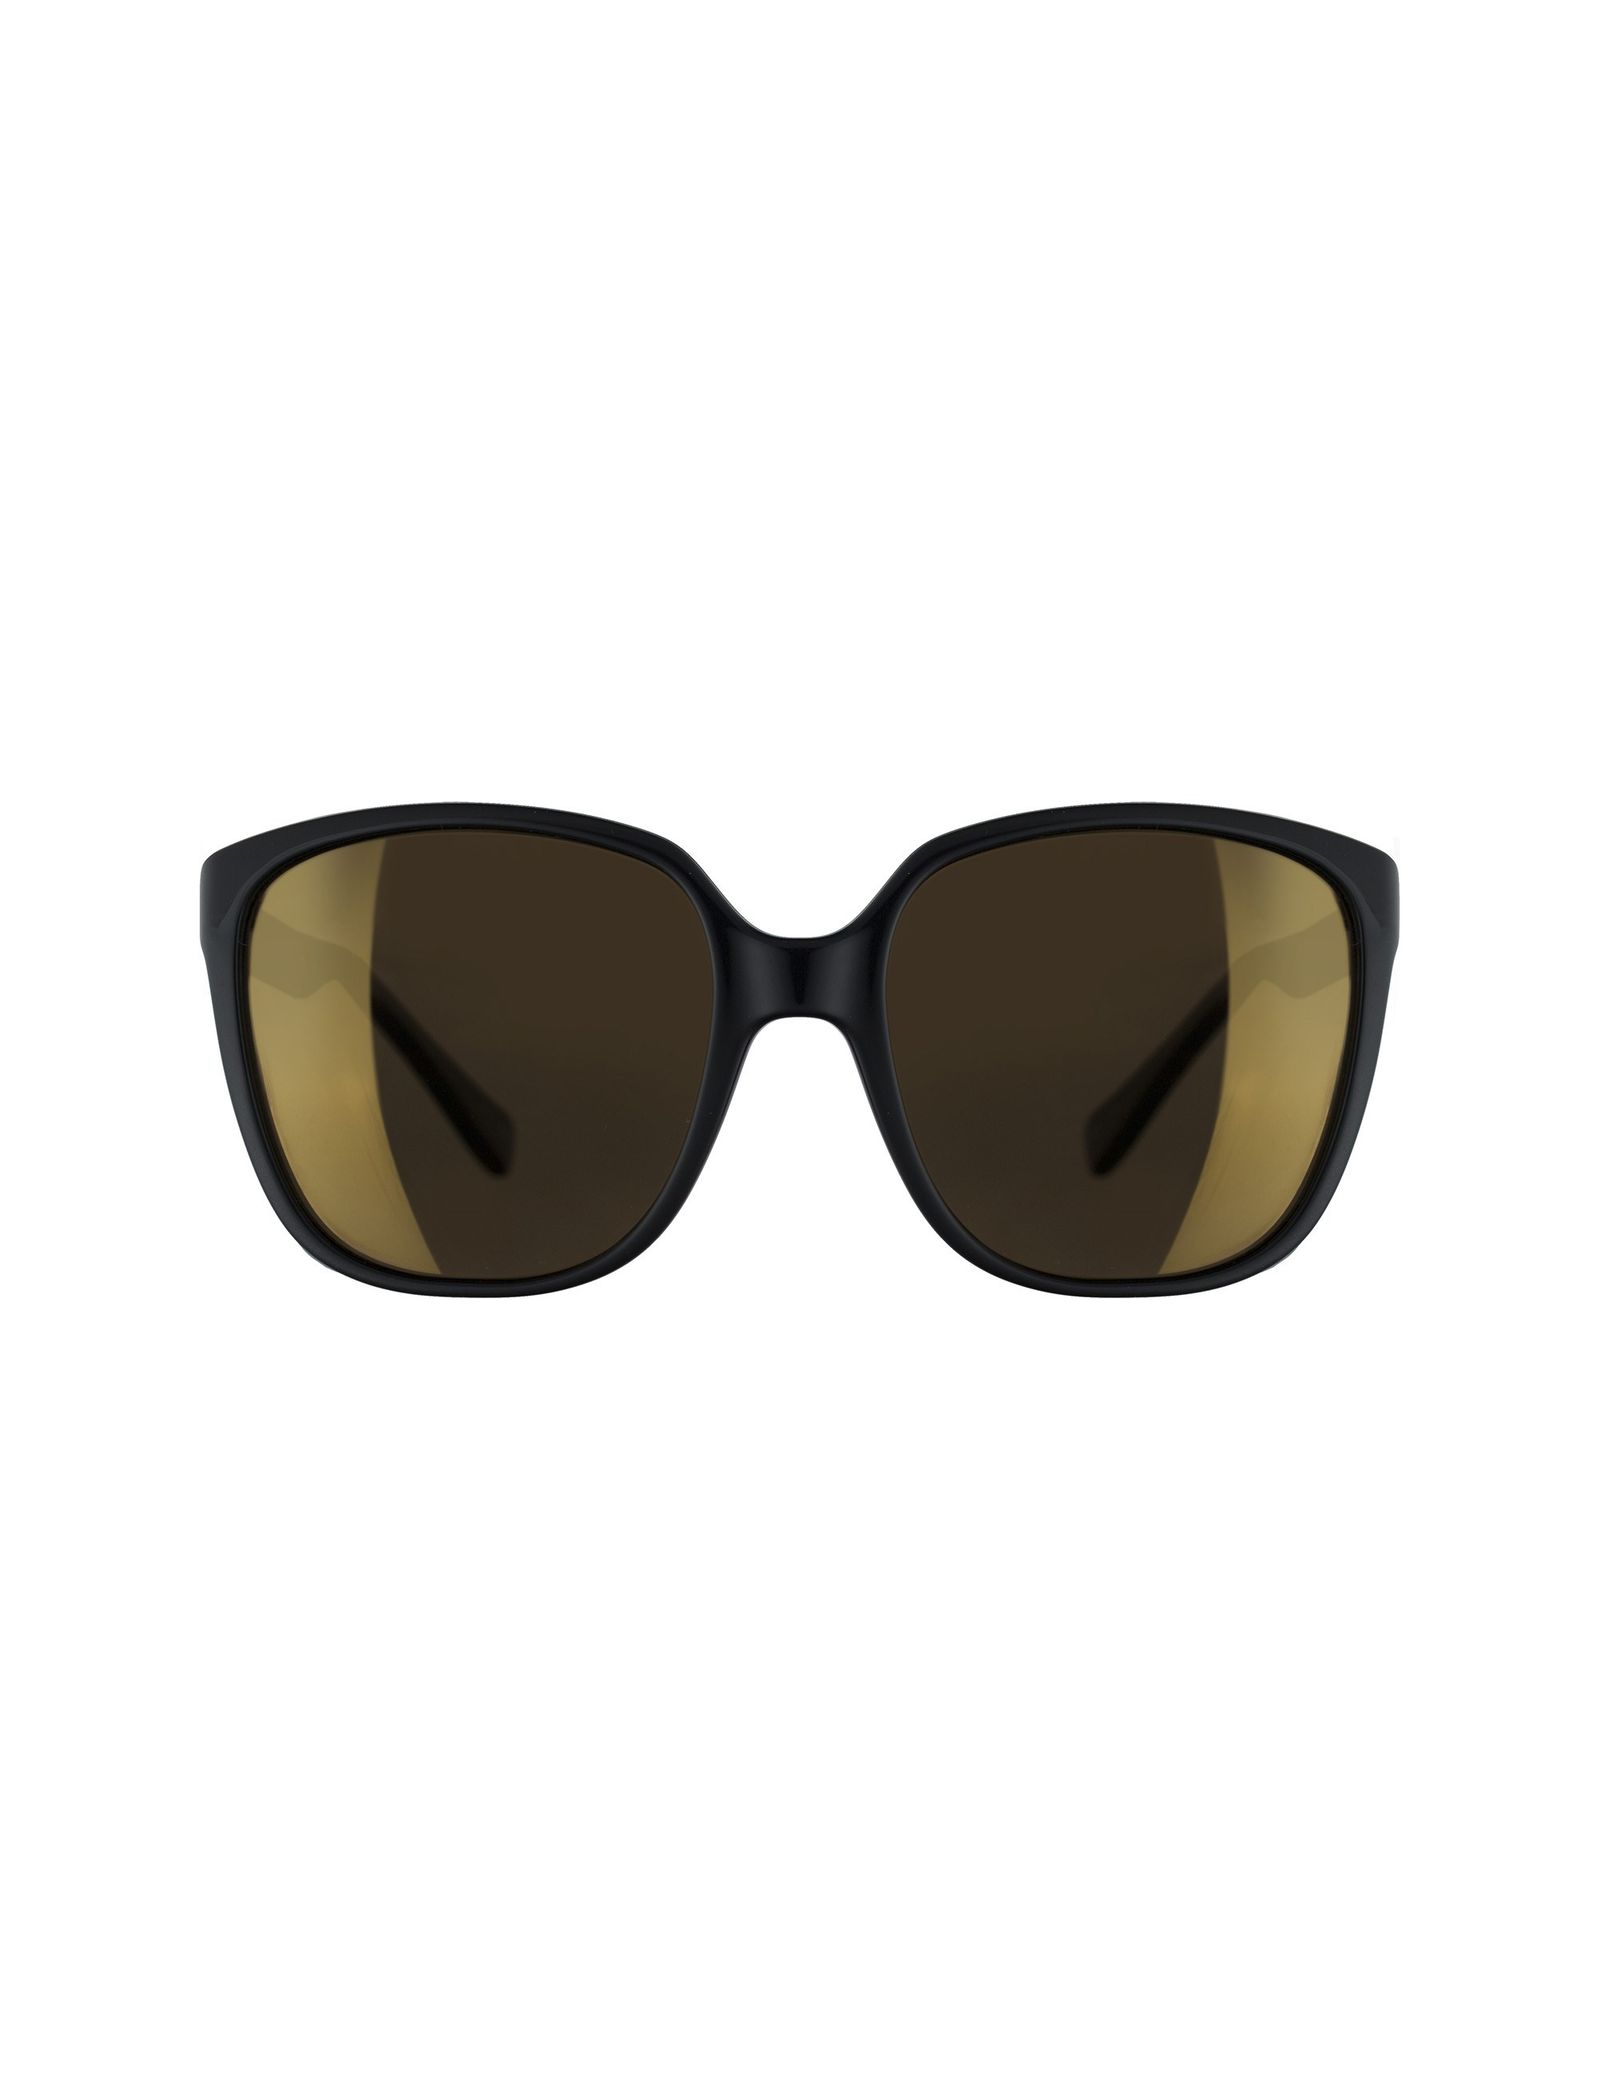 عینک آفتابی مربعی زنانه - تد بیکر - مشکي - 1